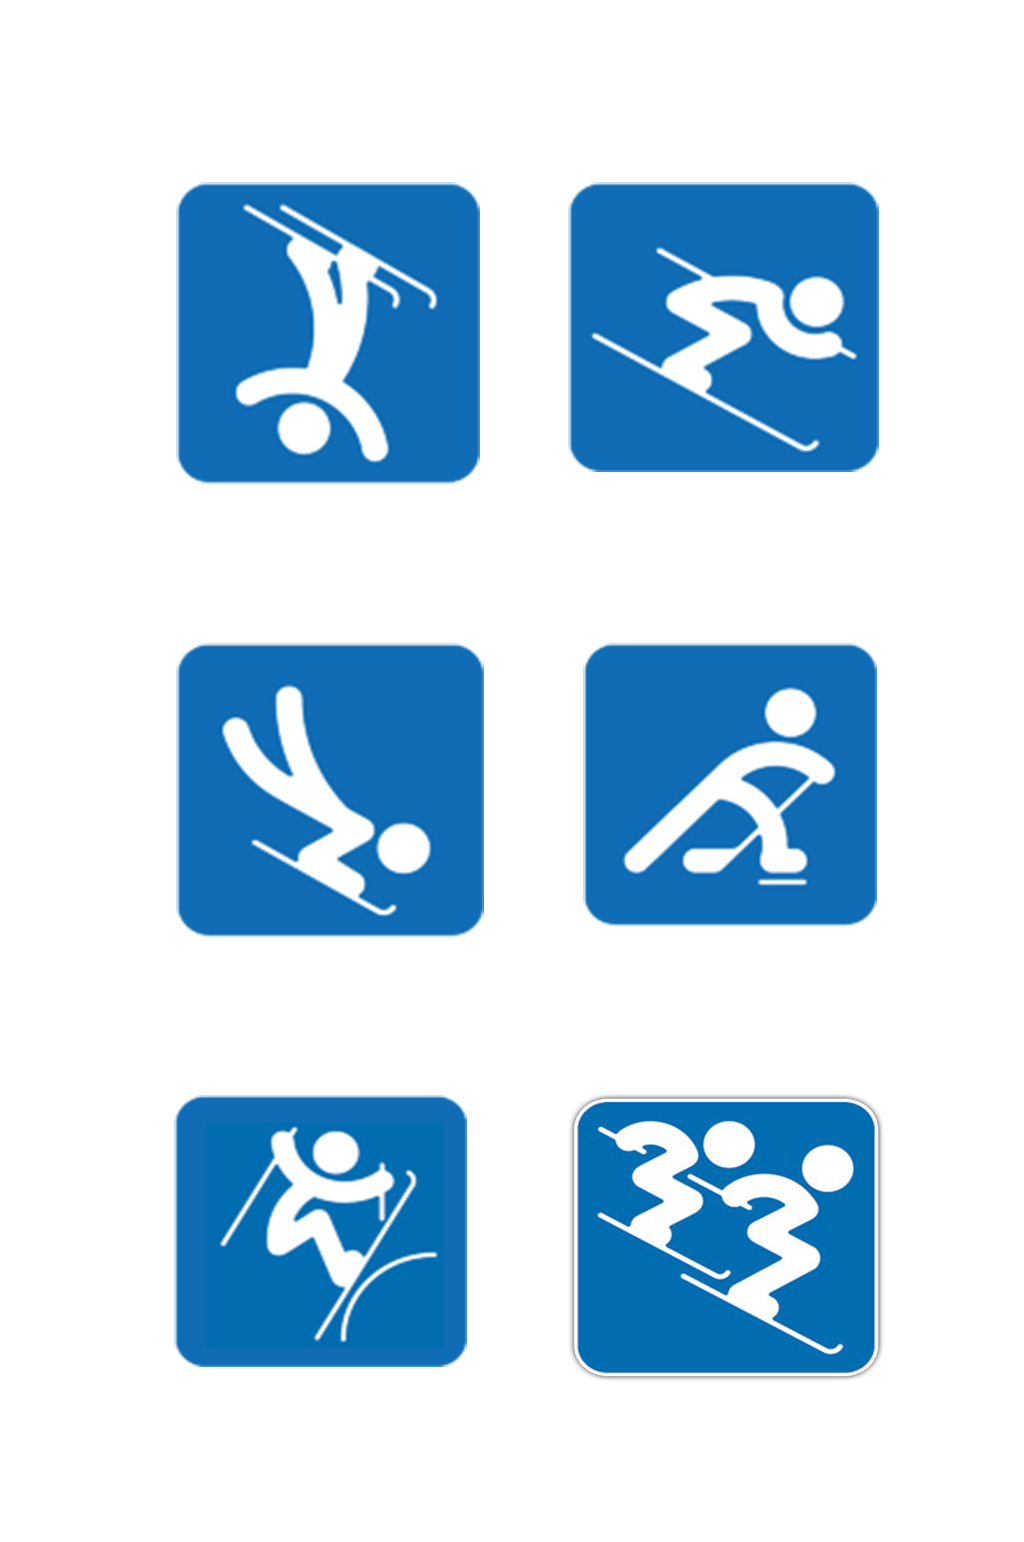 冬奥运项目标志简笔画图片